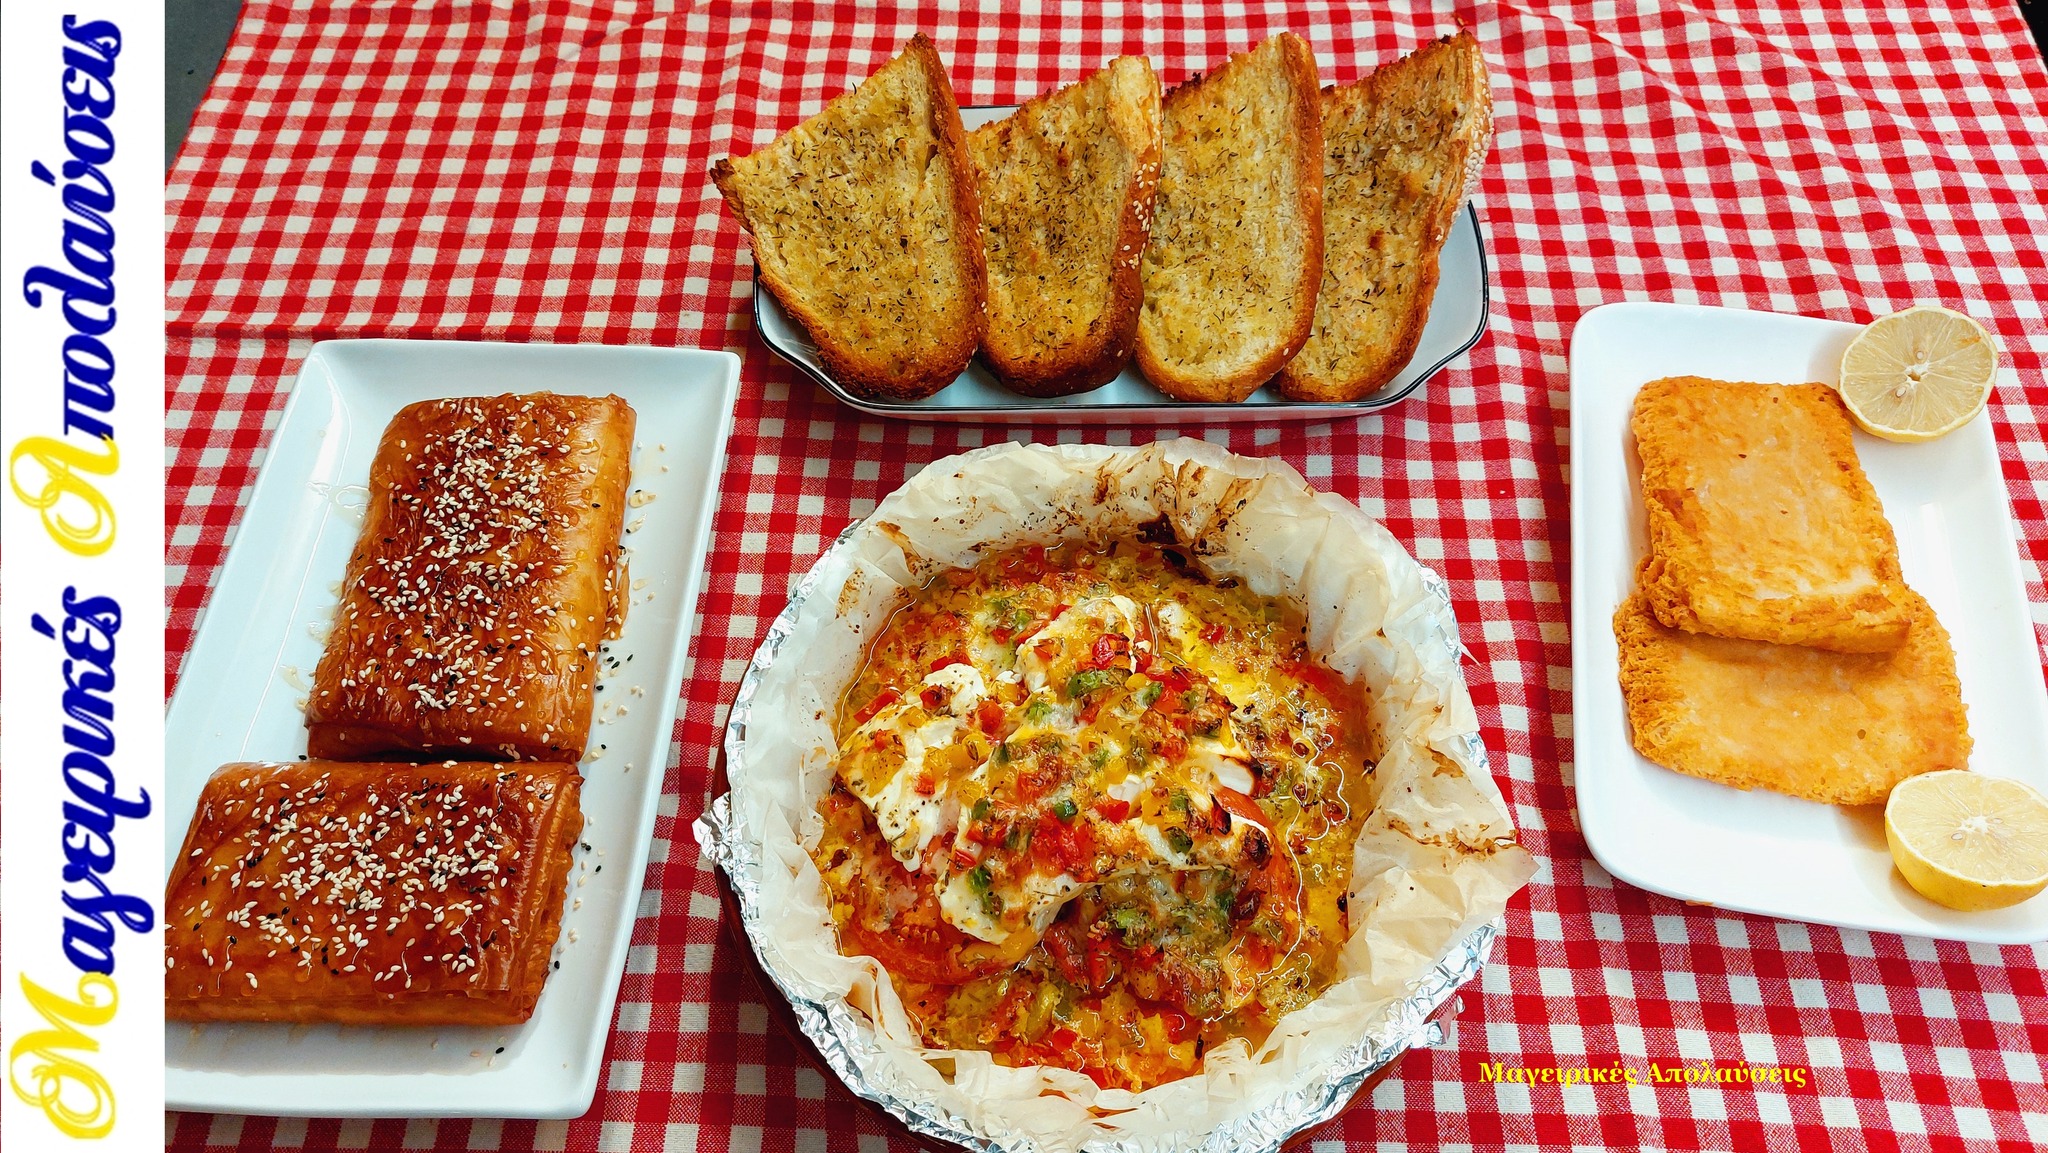 συνταγή-για-μπουγιουρντί-σαγανάκι τυρί-ψητό ψωμί-με-ελαιόλαδο-και-φέτα-ψητή-με-μέλι-και-σουσάμι-